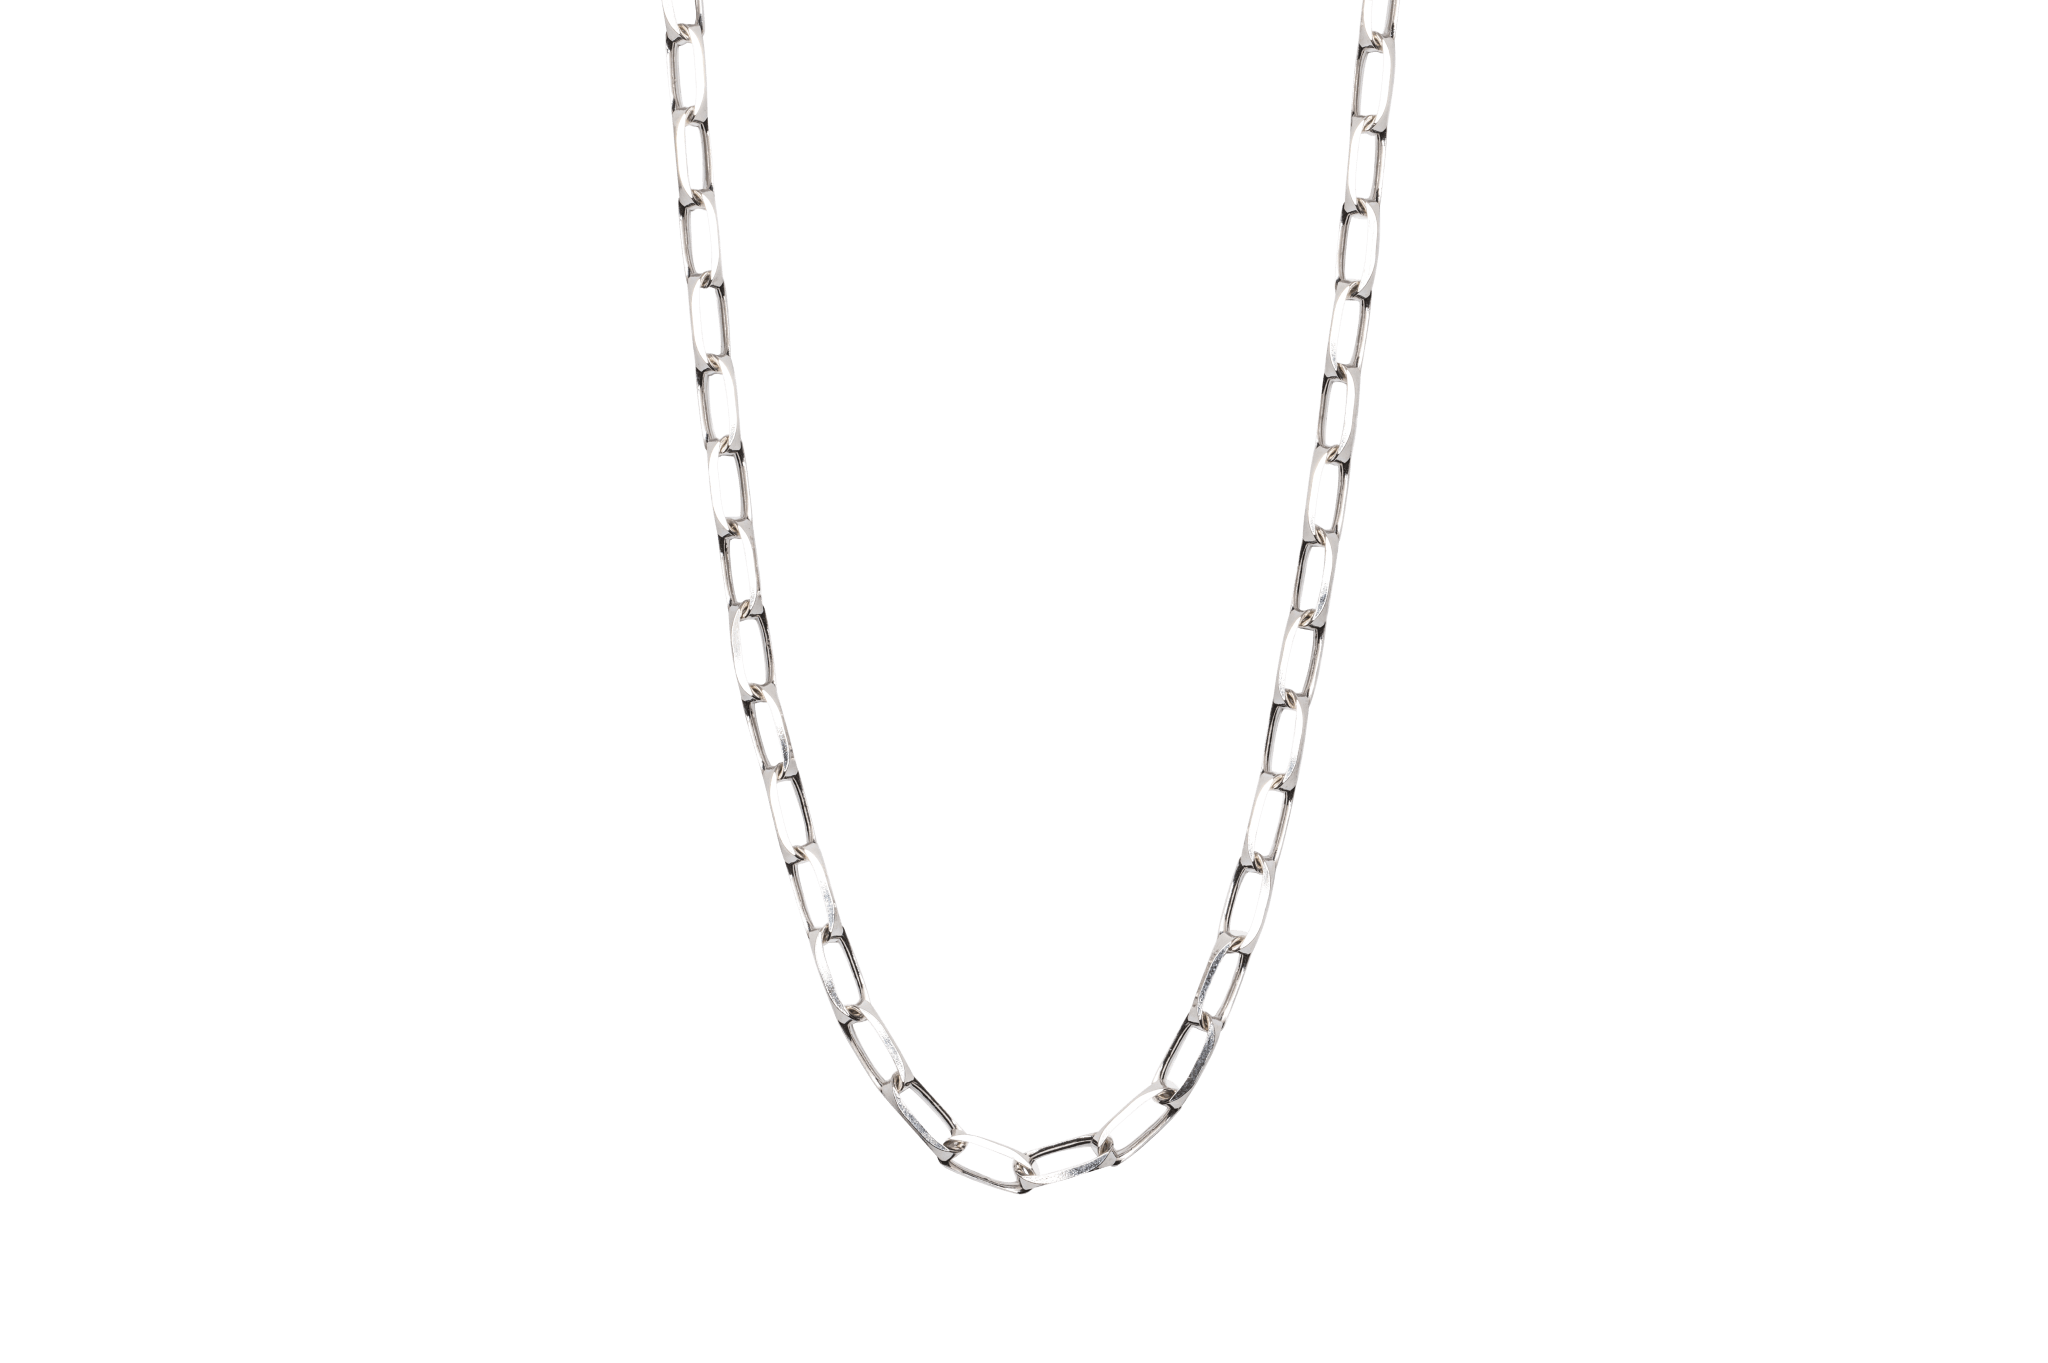 IX Prestige Chain Silver